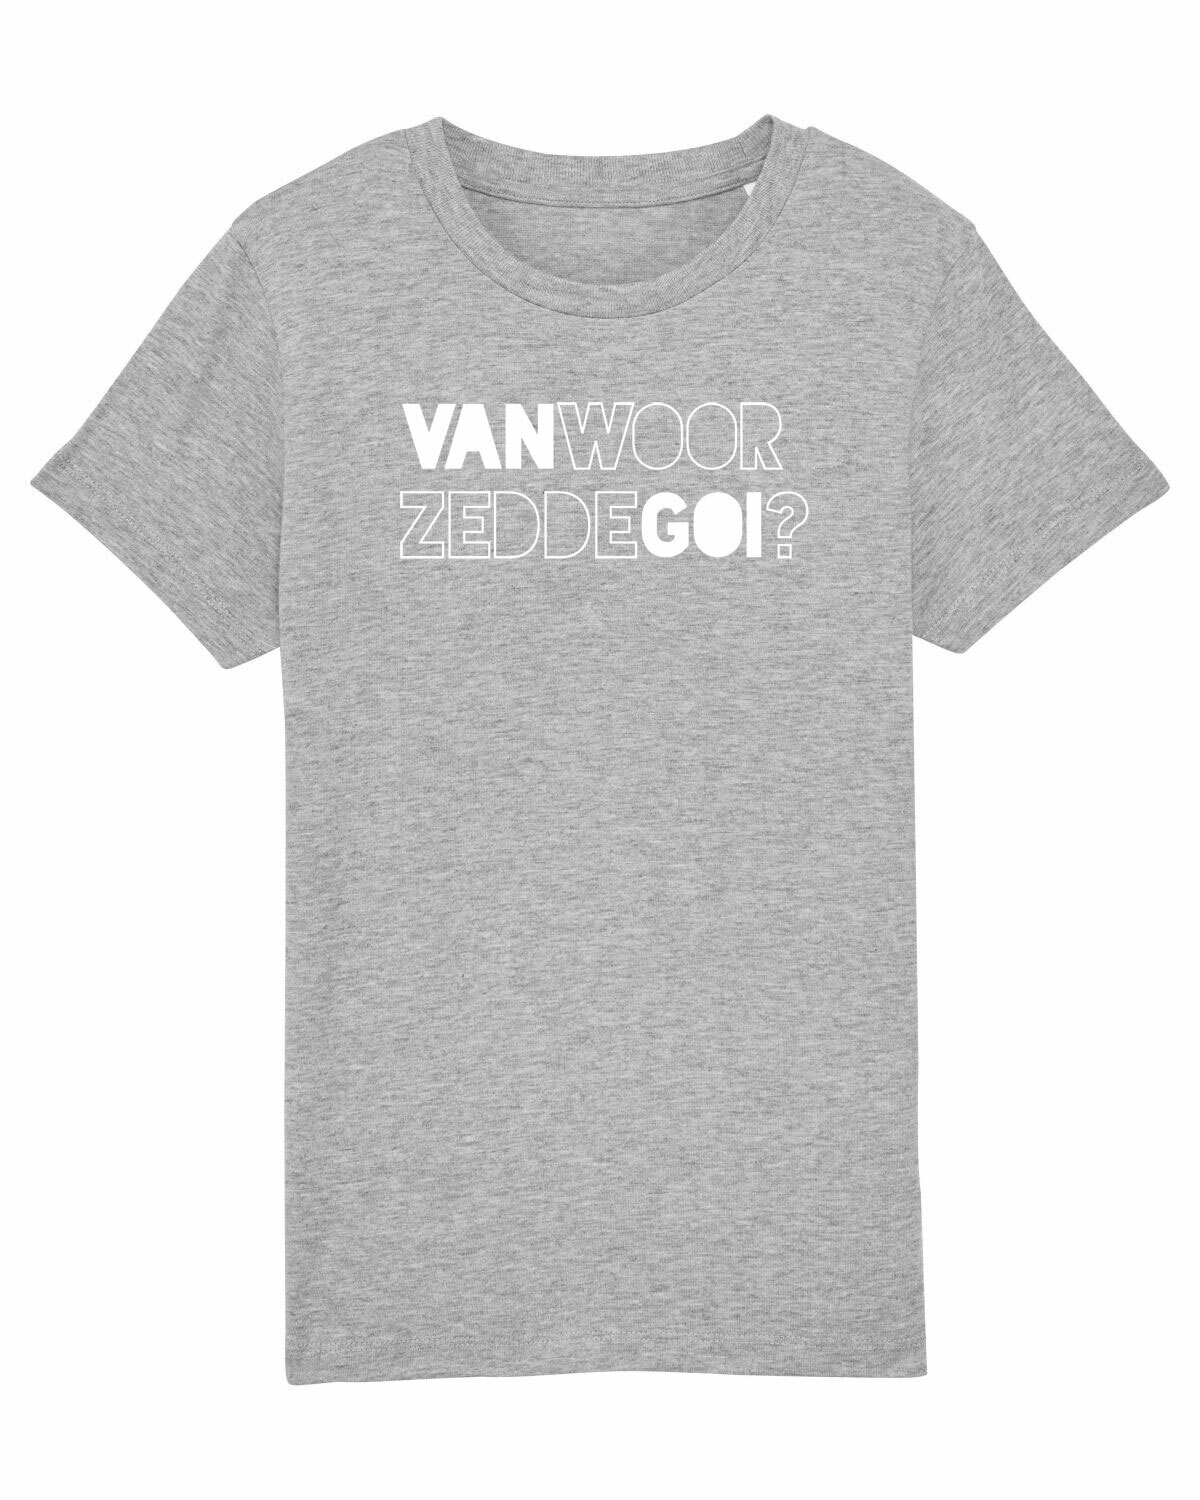 Kids T-shirt Van Woor Zedde Goi?